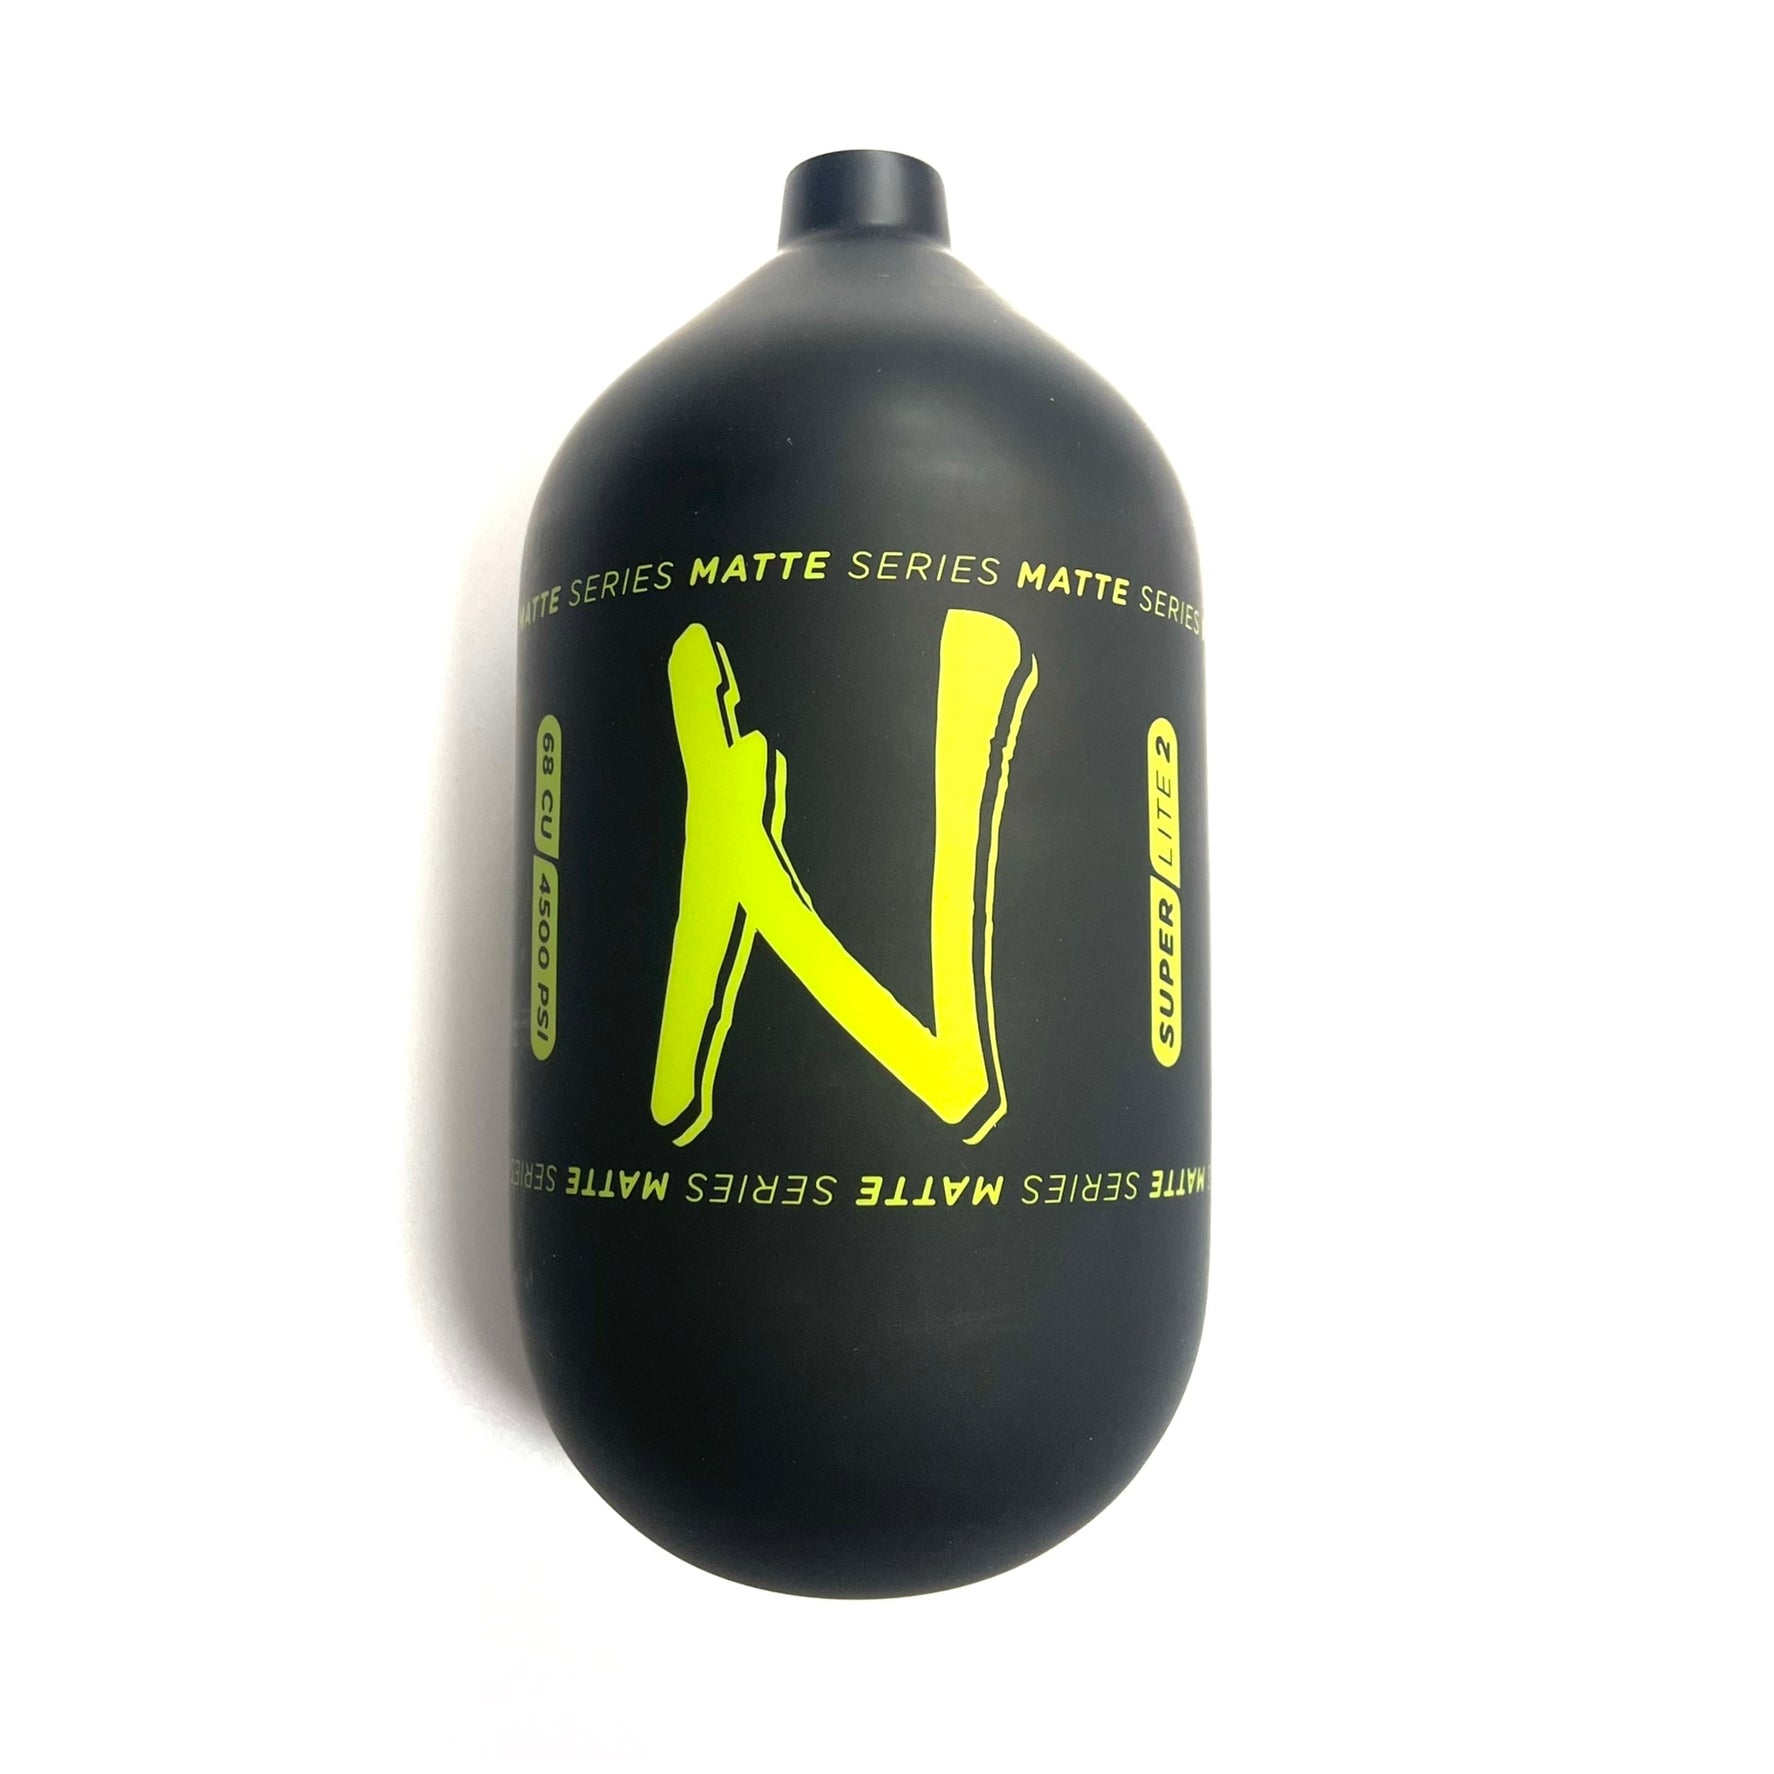 Ninja SL2 68/4500 "Matte Series" Carbon Fiber Paintball Tank BOTTLE ONLY - Black/Lime